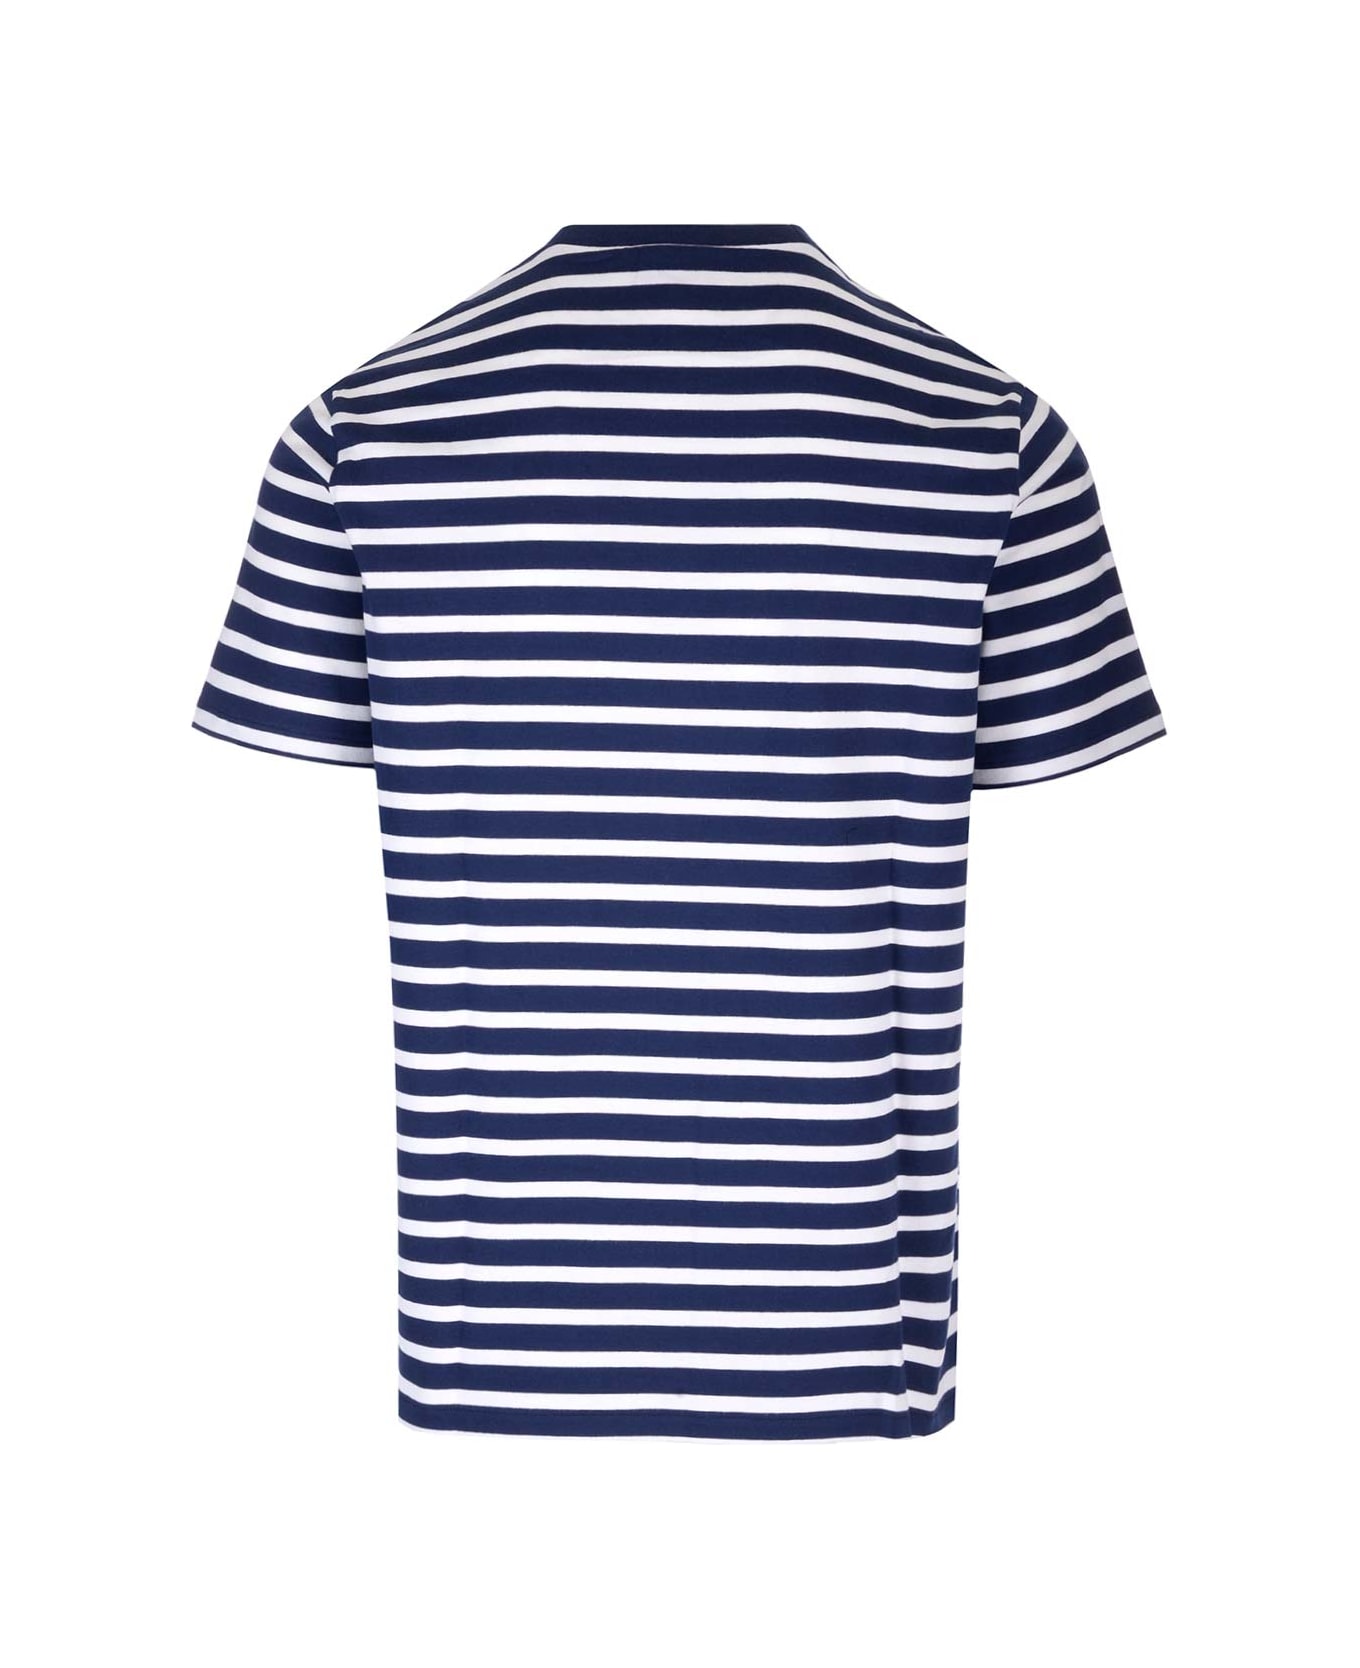 A.P.C. Emilien Striped T-shirt - blue